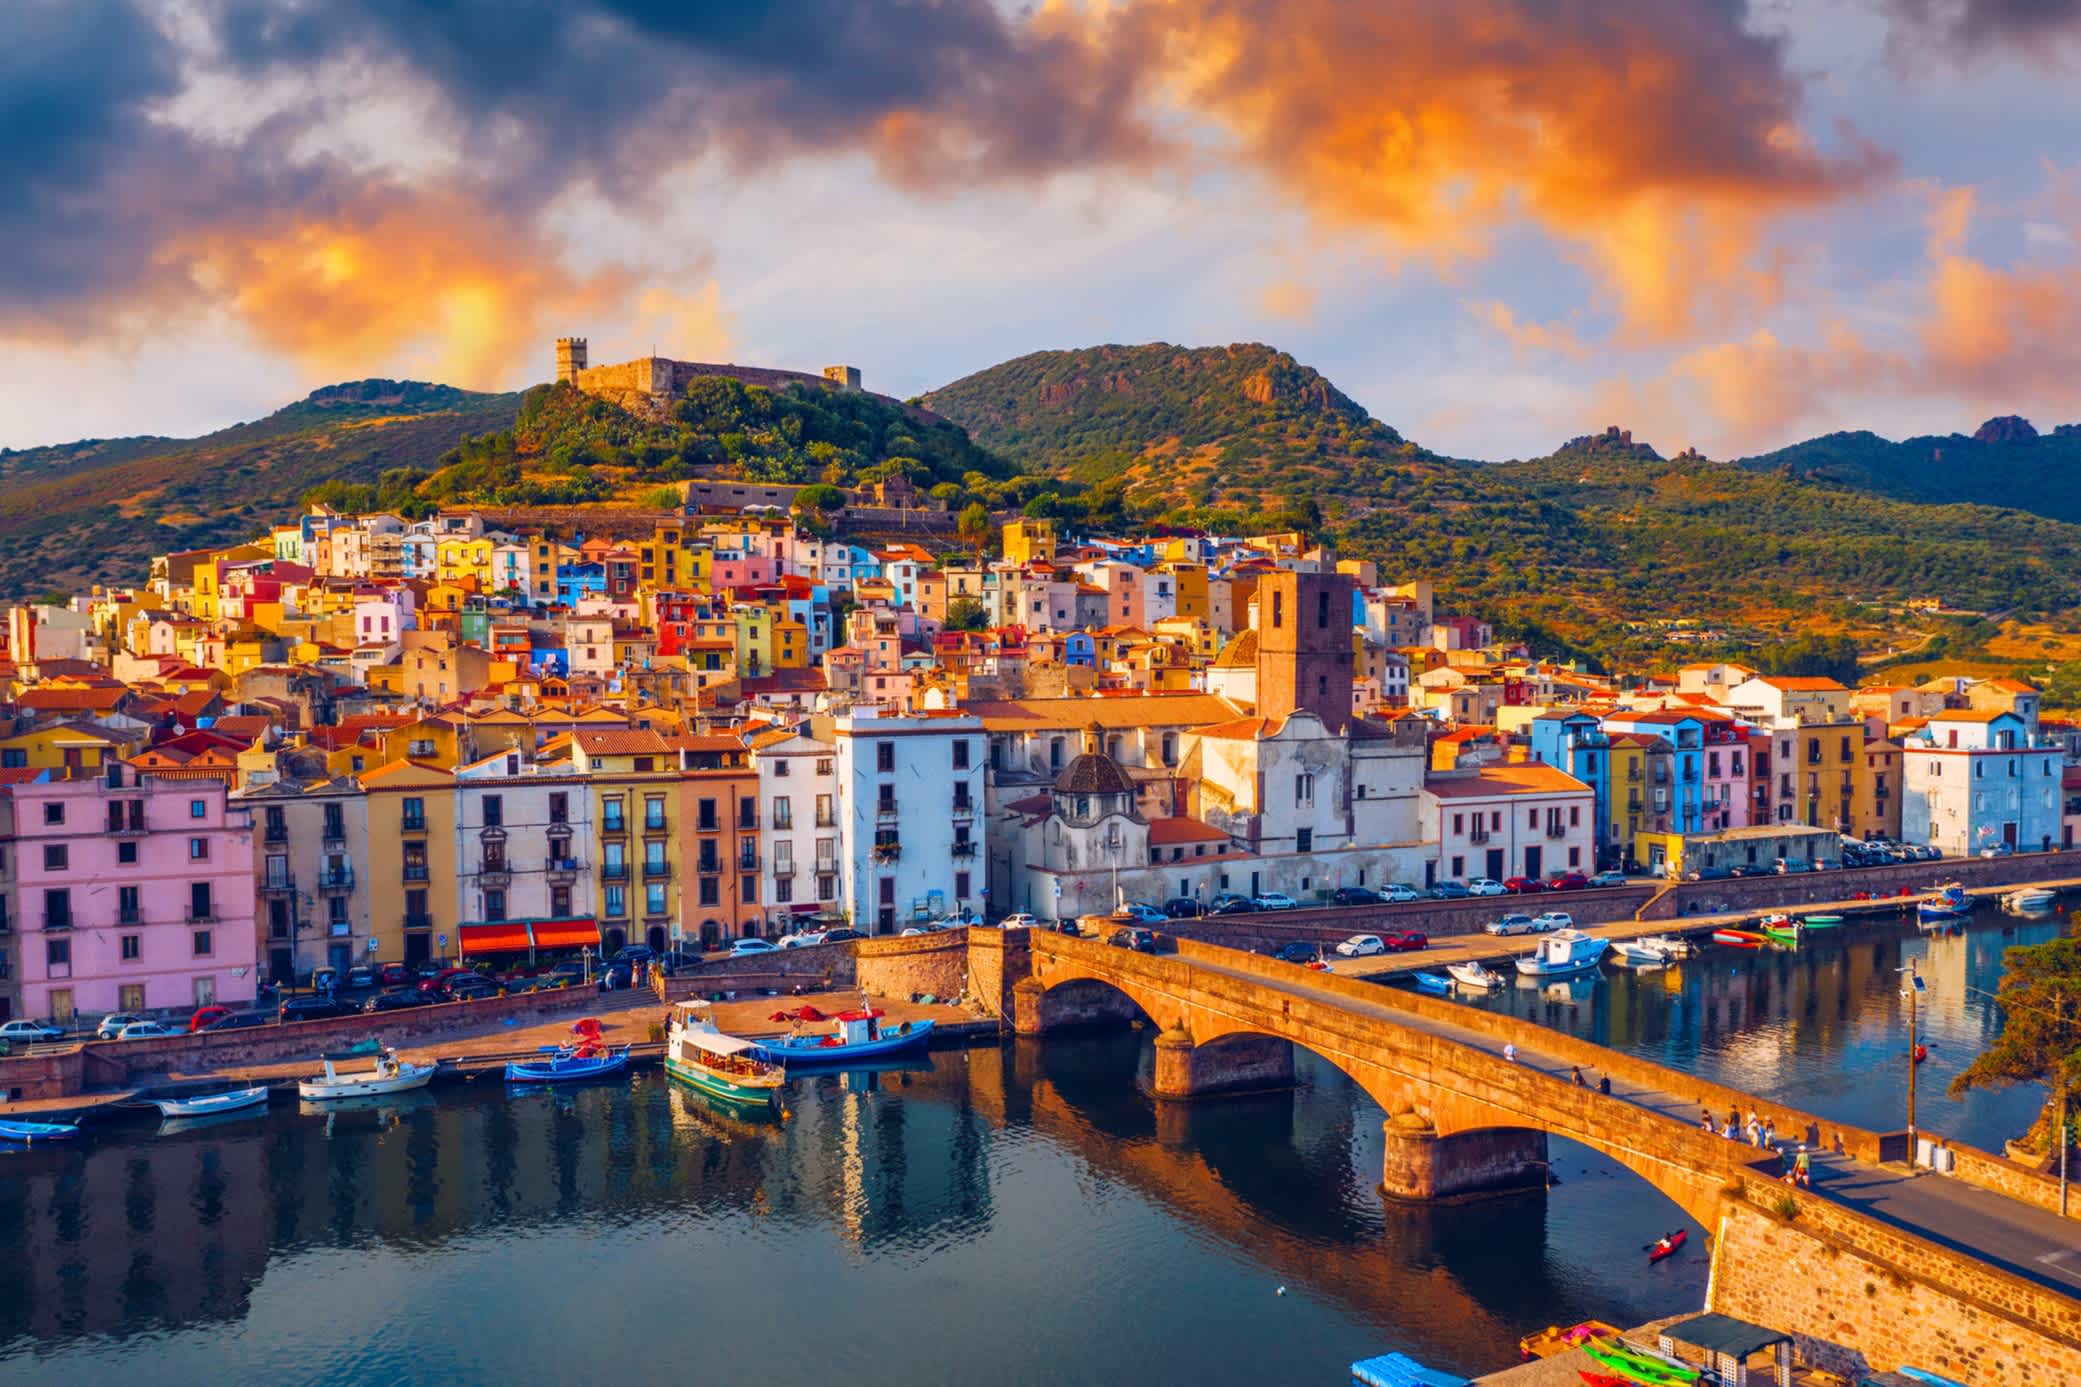 Bosa en Sardaigne avec ses façades de maisons colorées, sa rivière et son pont